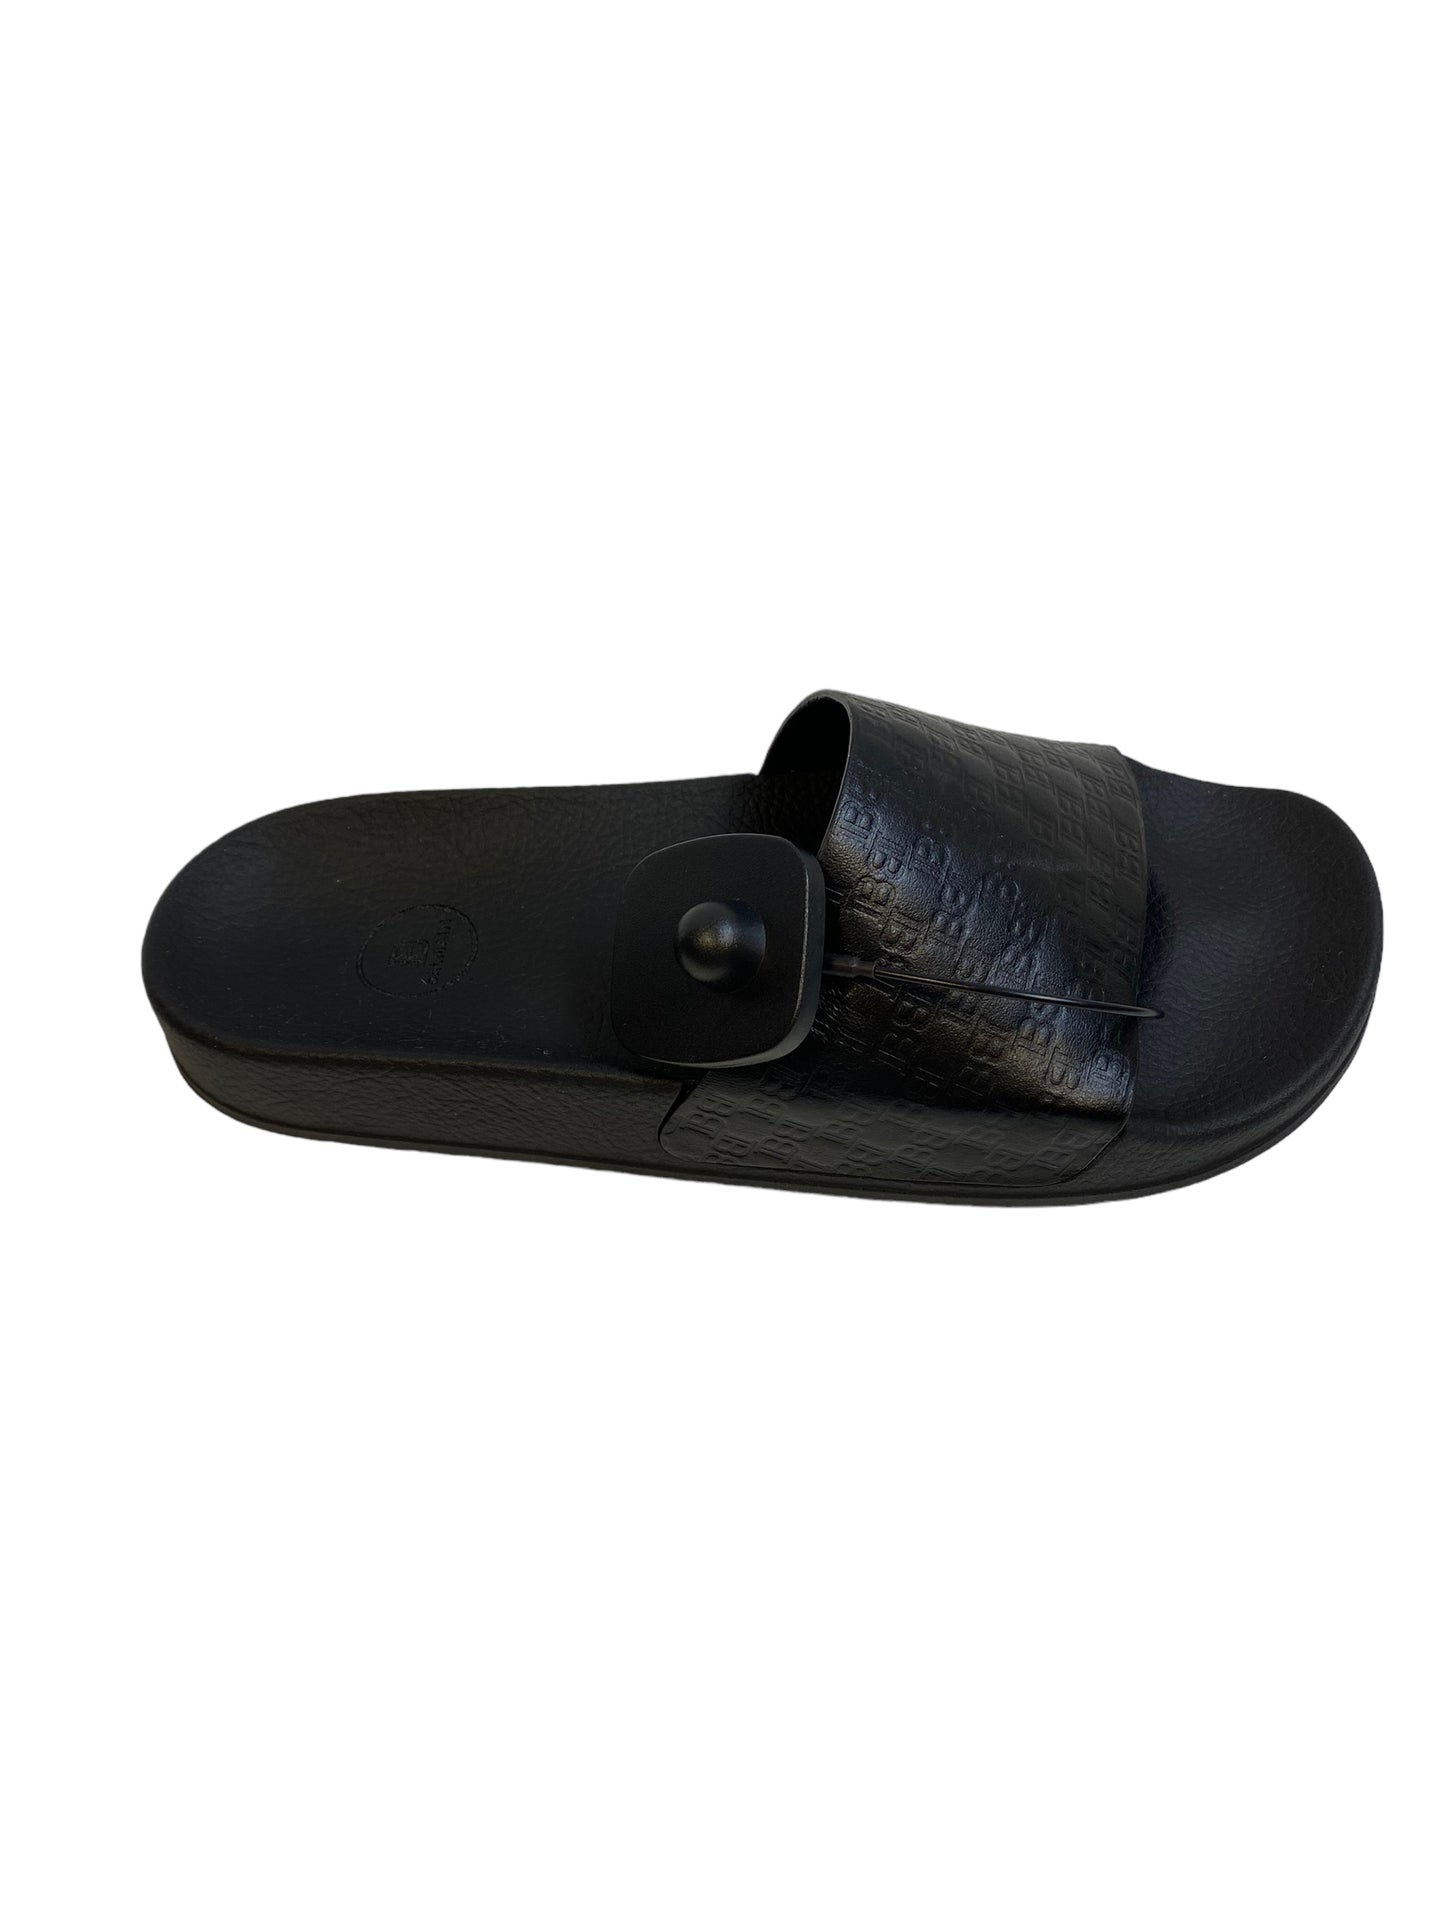 Sandals Luxury Designer By Balmain  Size: 8.5